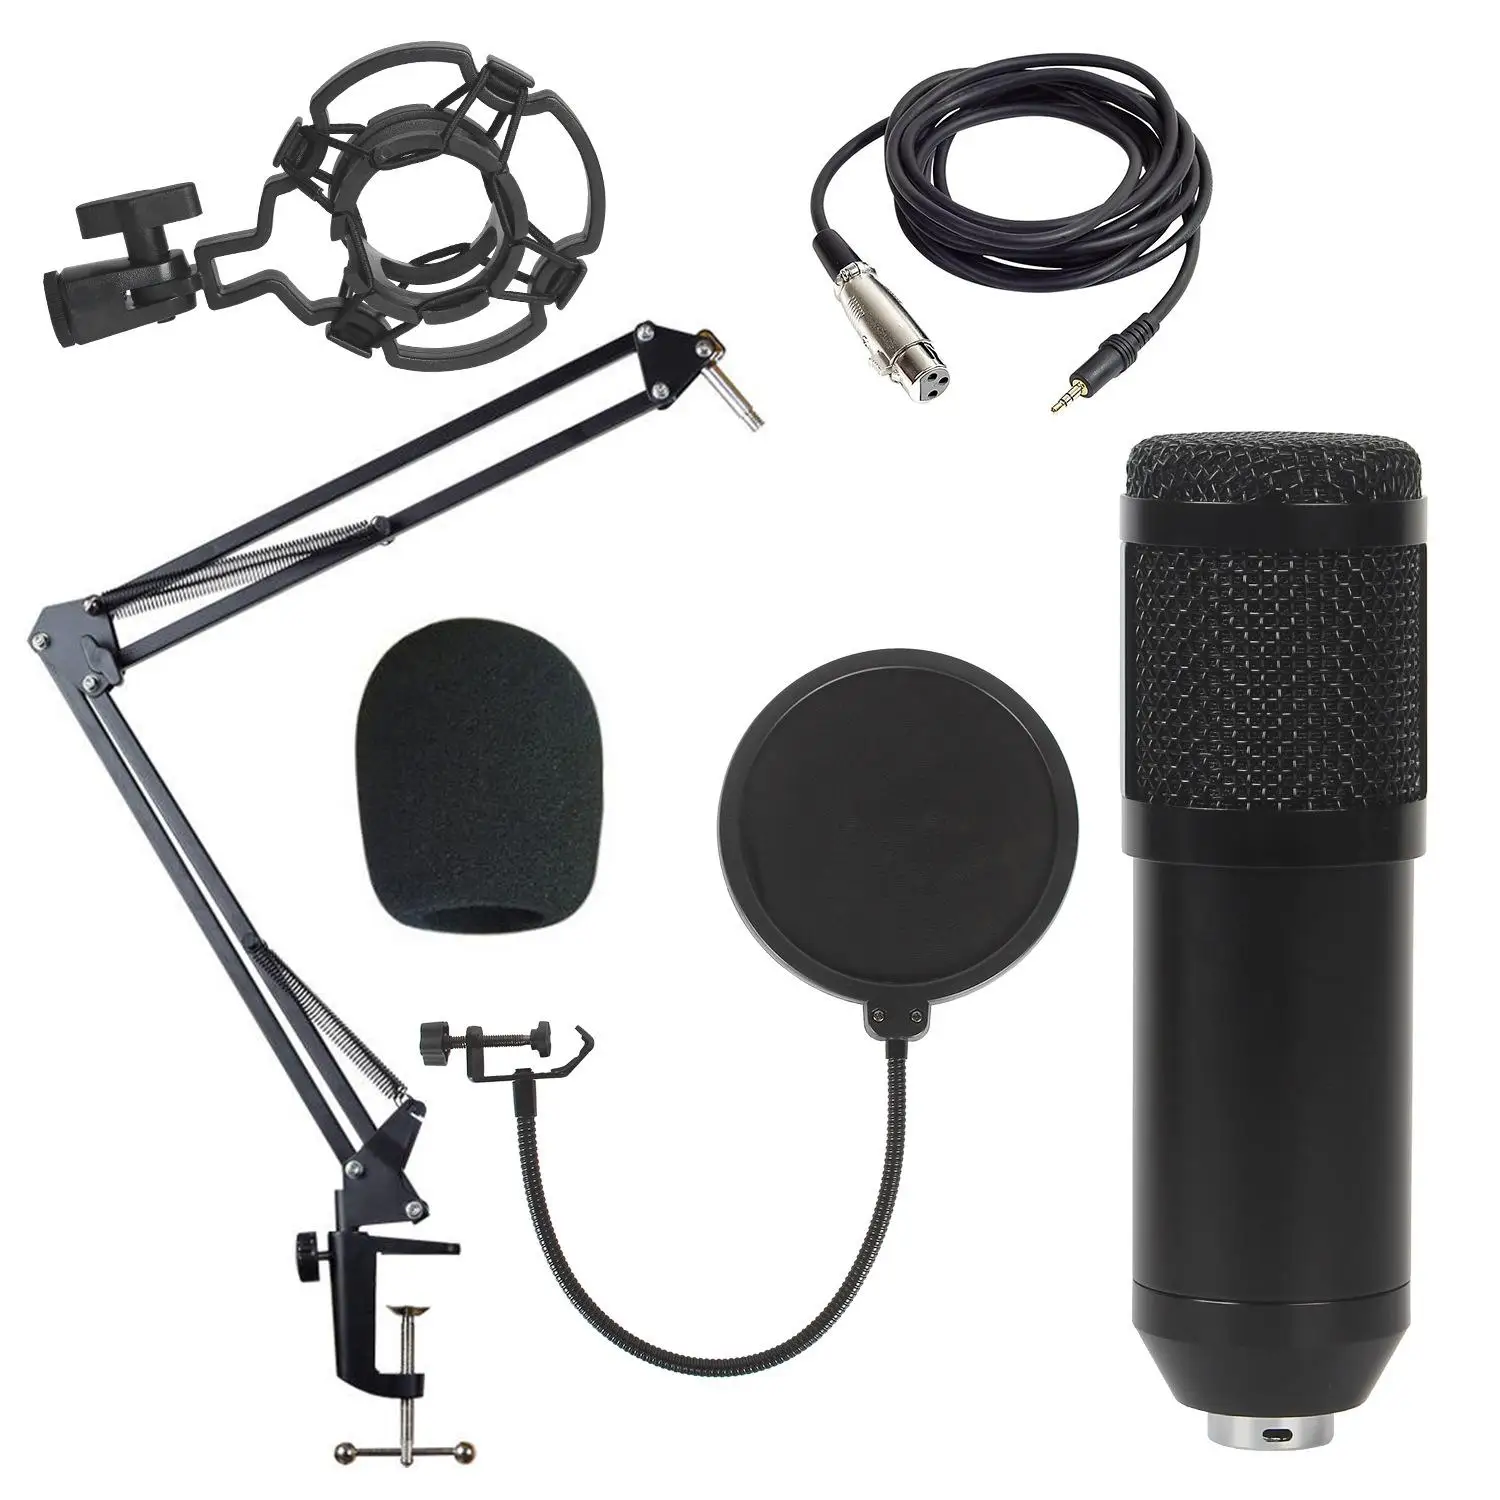 

Профессиональный конденсаторный микрофон Bm800 для кристально чистого звукового нового изготовления и домашней прямой трансляции-лучший выбор для